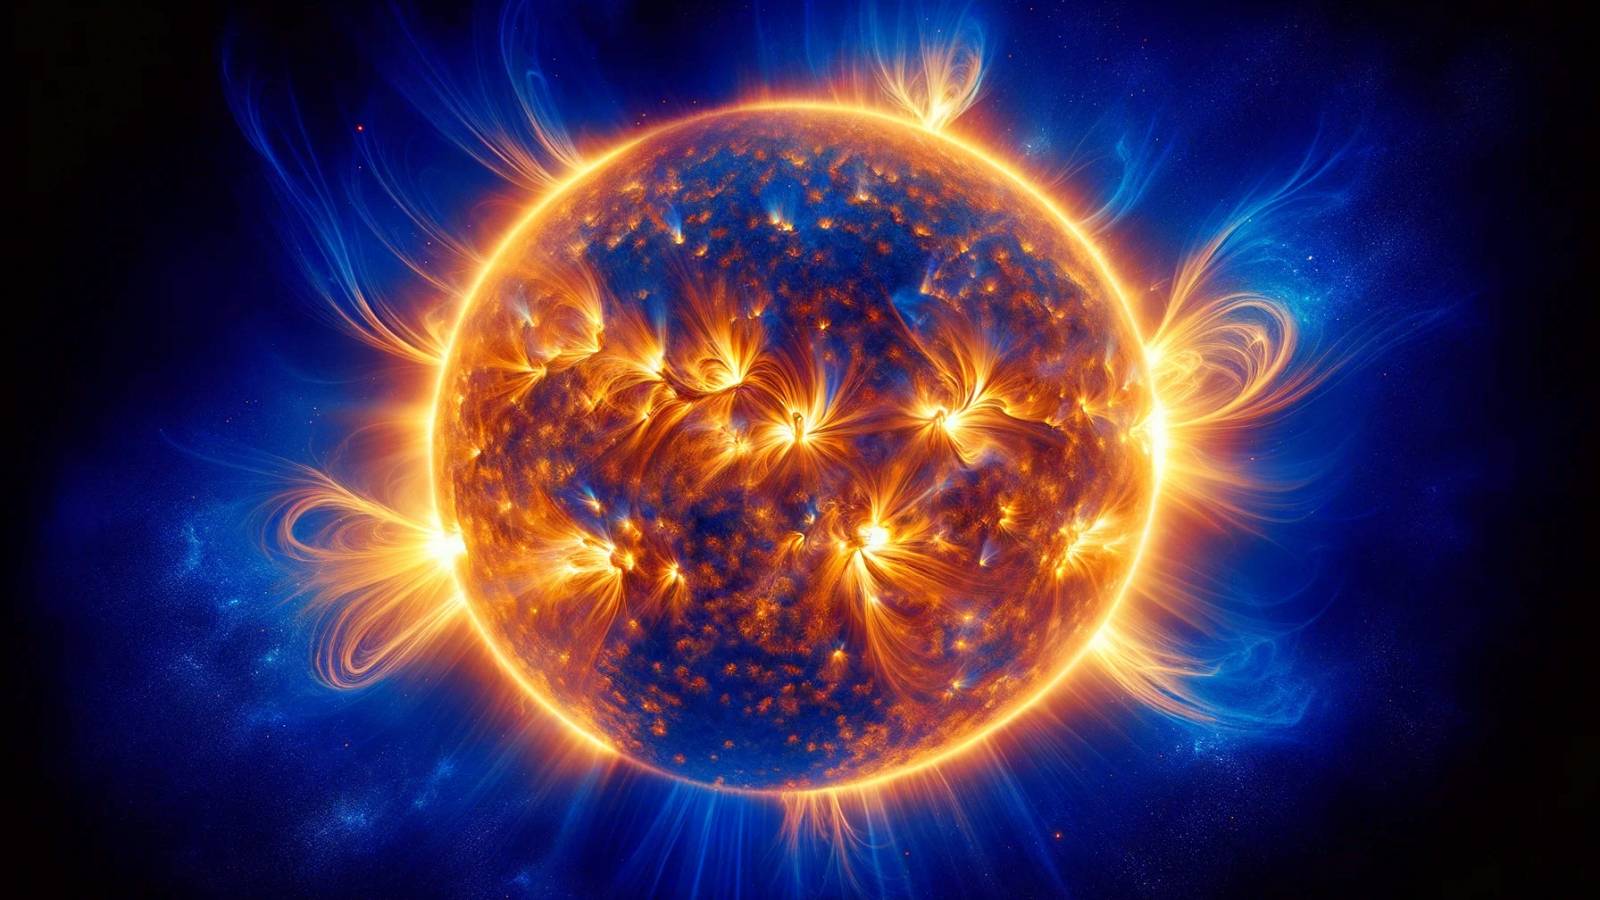 Le mystère du Soleil Les chercheurs sont presque résolus